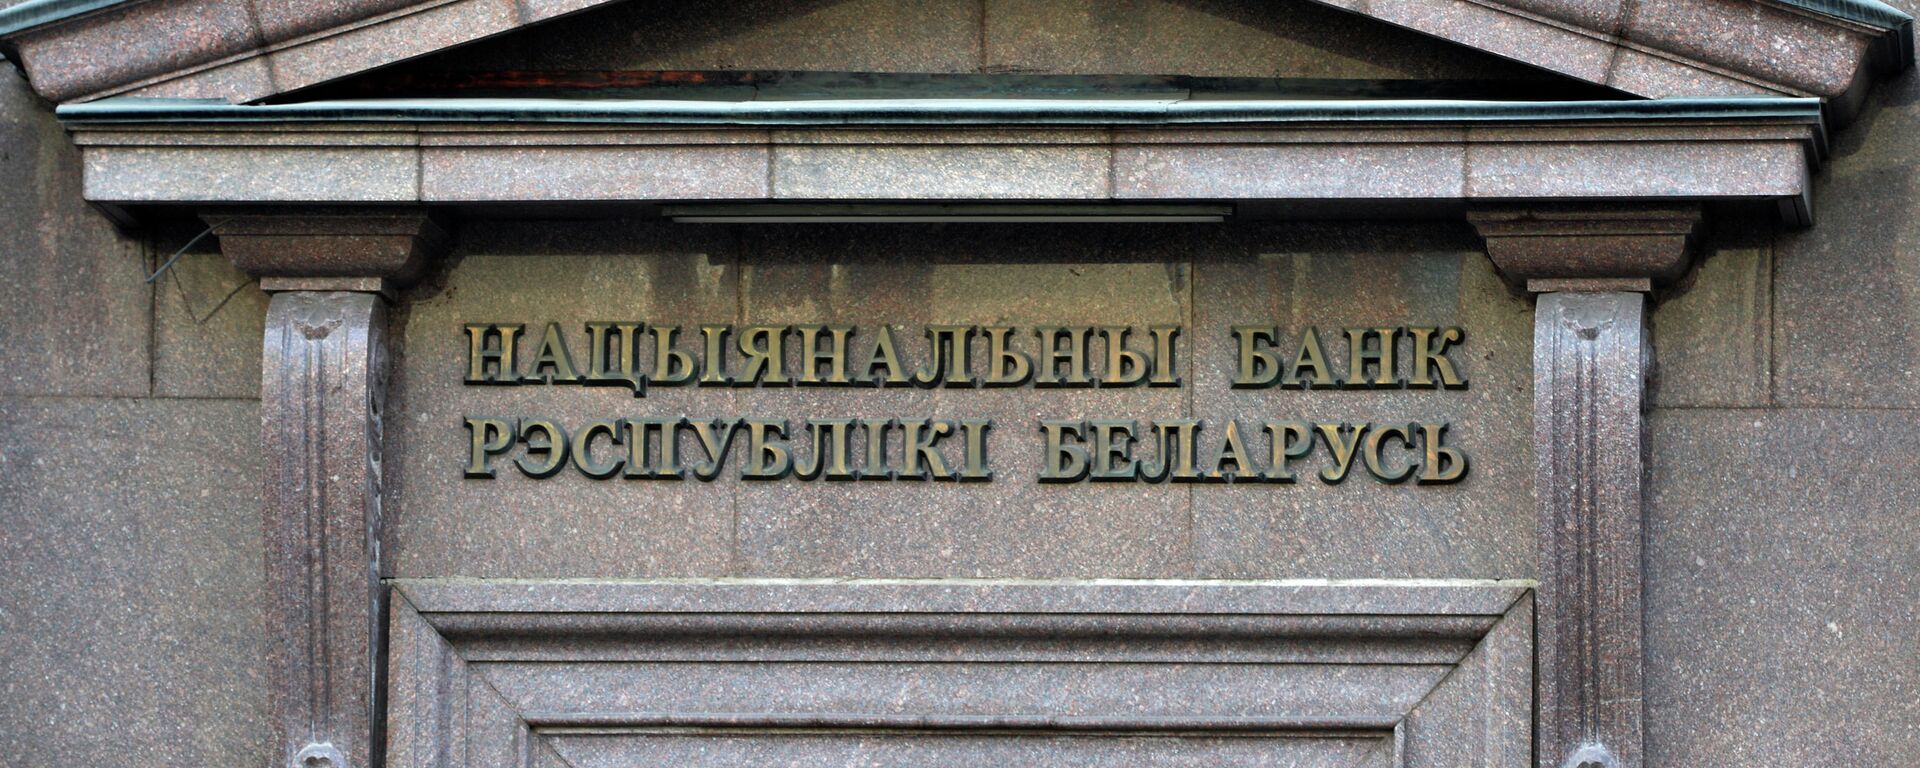 Нацыянальны банк Беларусі - Sputnik Беларусь, 1920, 06.05.2021